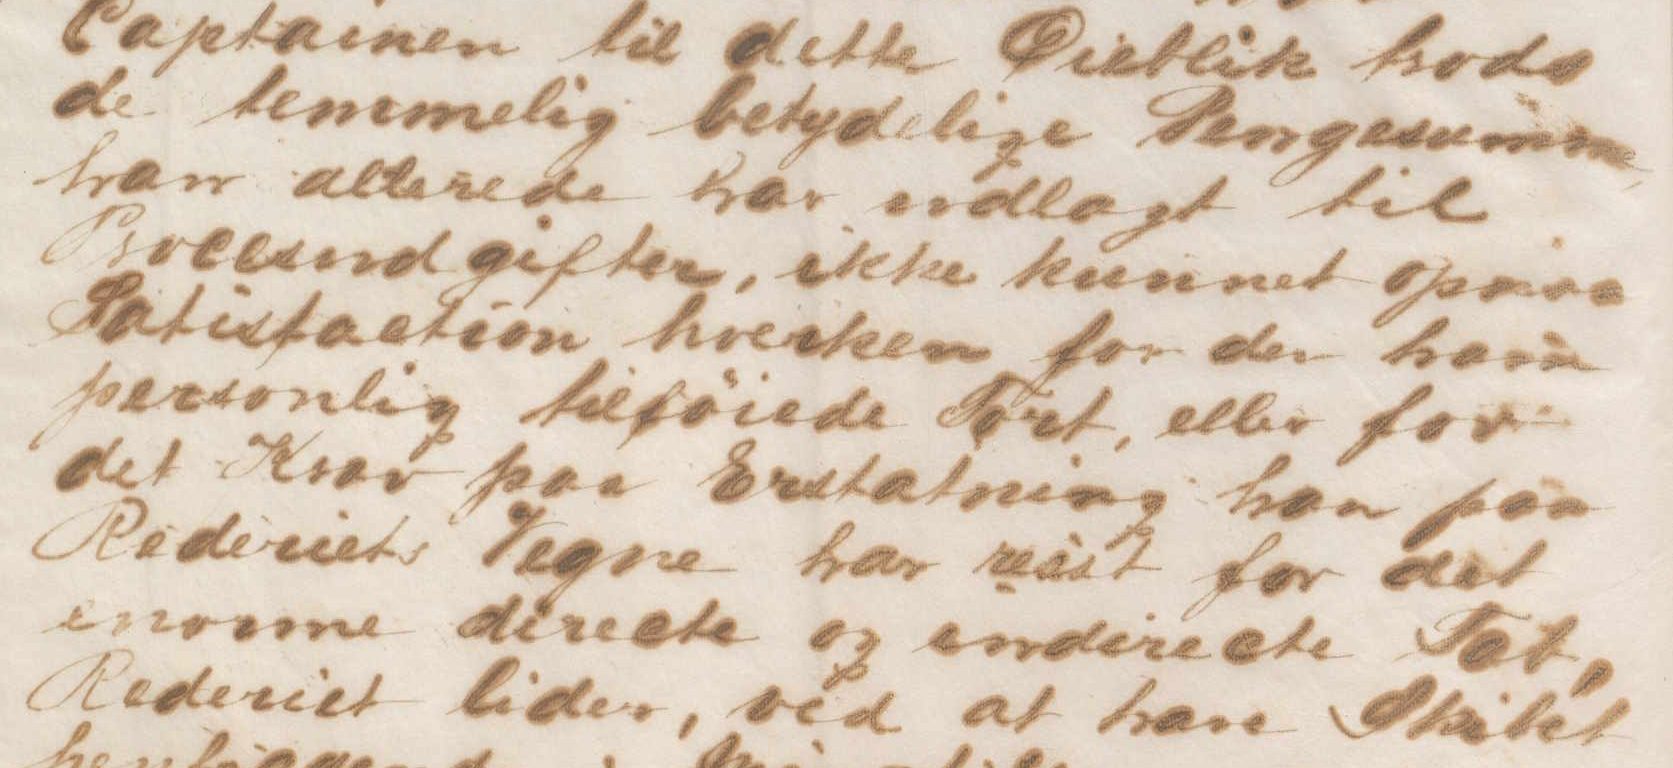 Brevkopi av brev fra Axel Herlofson 23.06.1884 s. 7